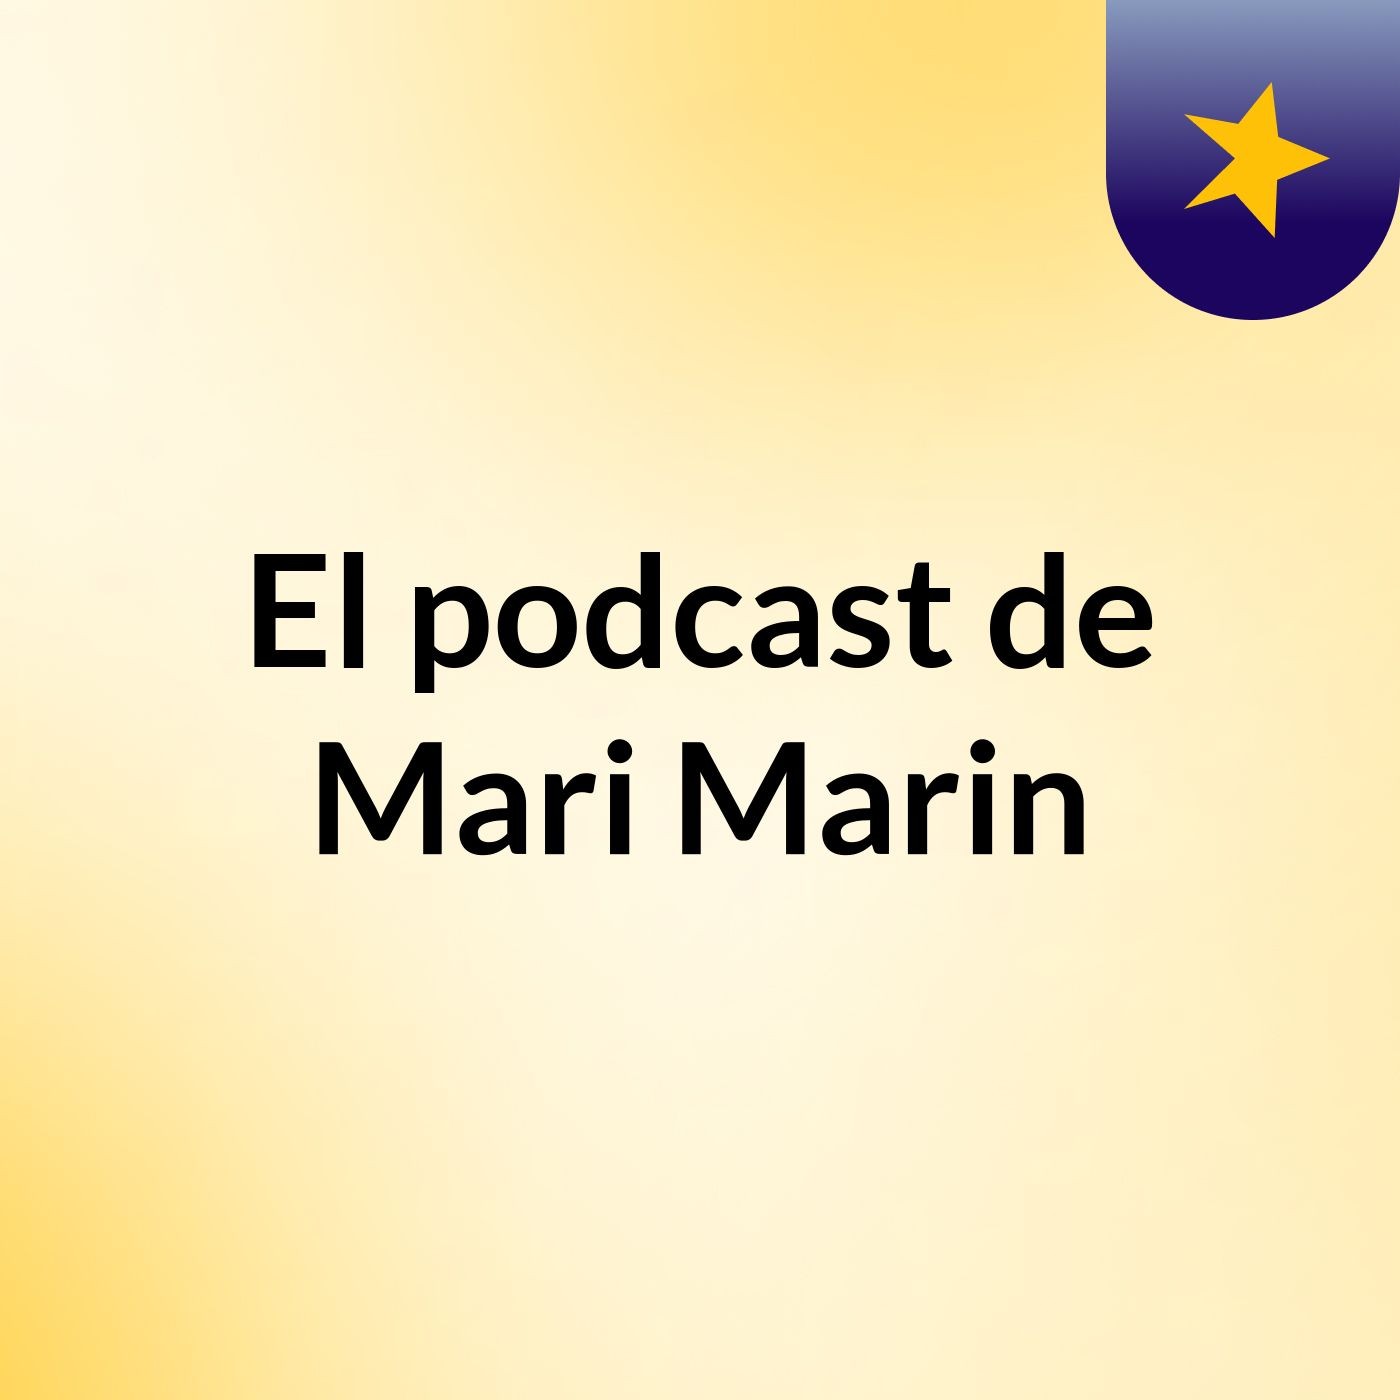 El podcast de Mari Marin